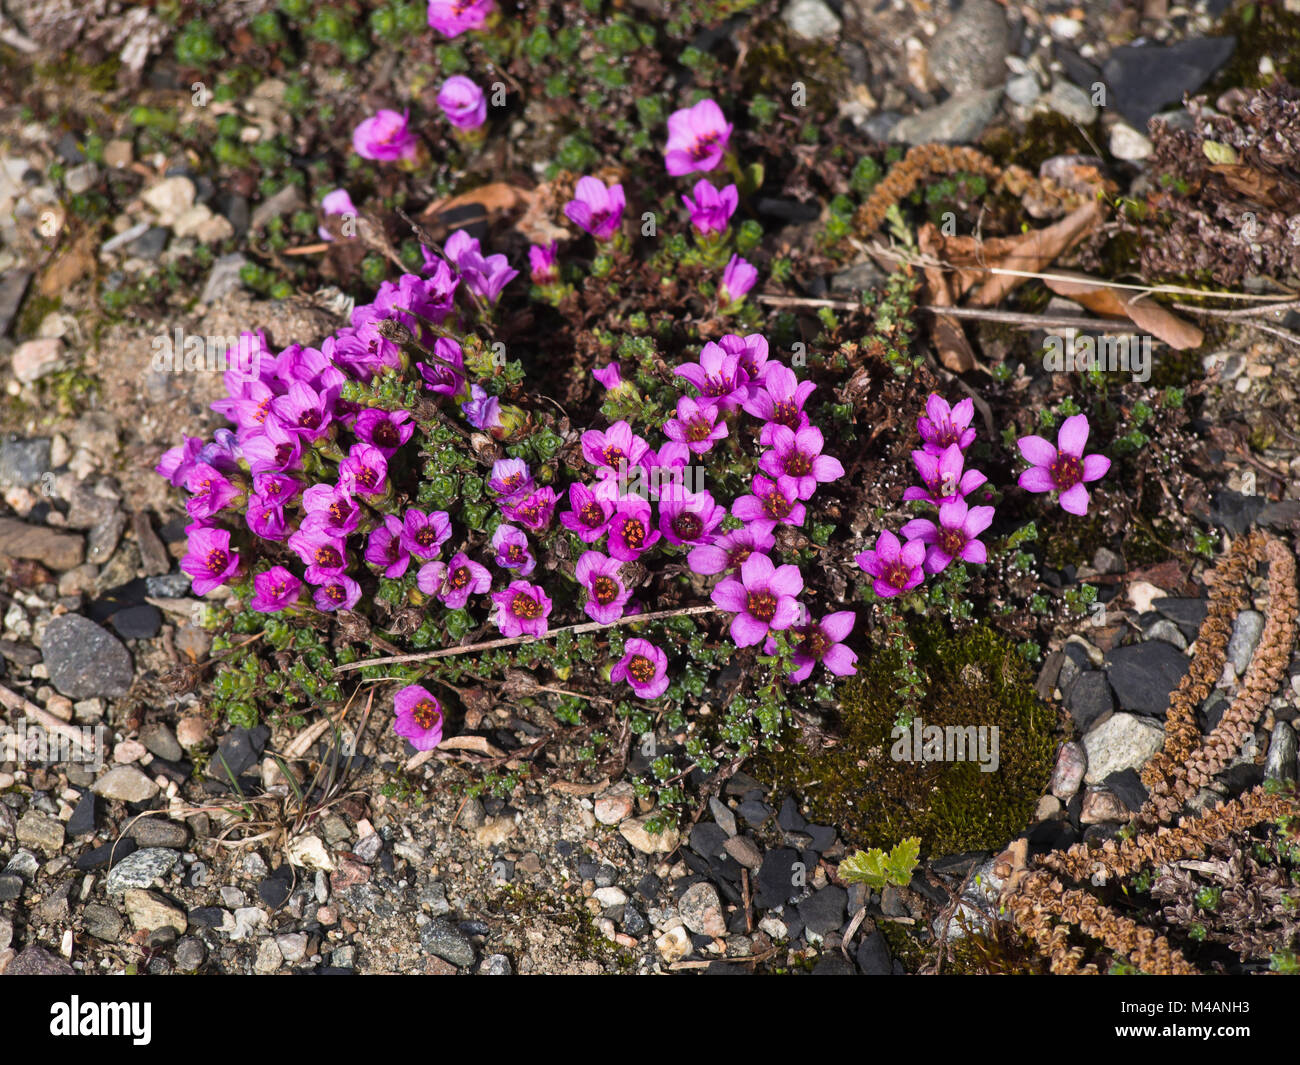 Saxifraga oppositifolia or purple mountain saxifrage an alpine, arctic plant with intense purple flowers in the springtime, botanical garden. Oslo Stock Photo